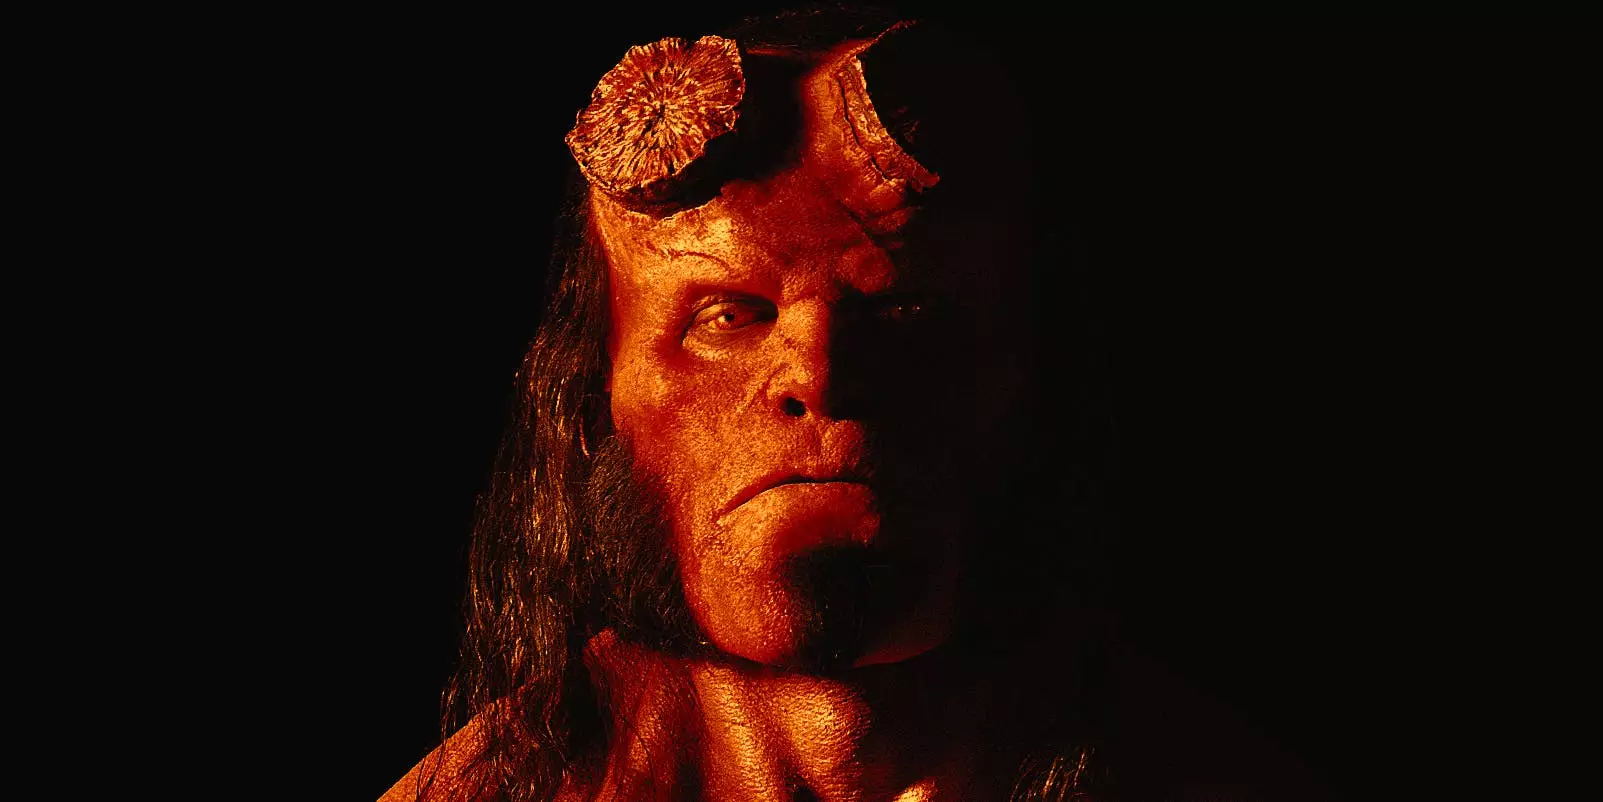 David Harbour as Hellboy.